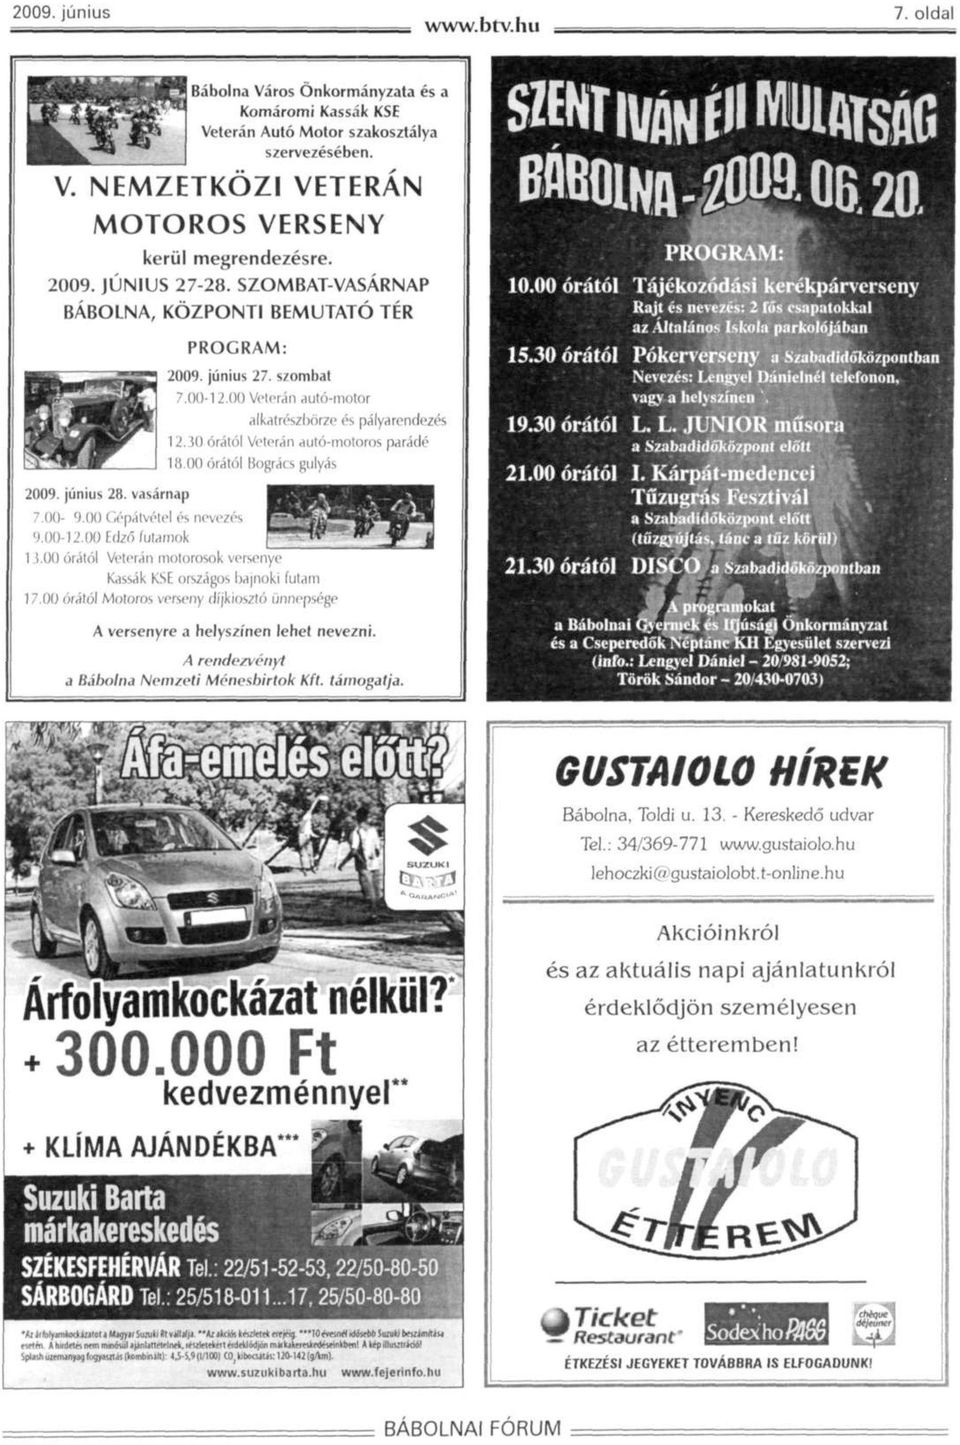 30 órától Veterán autó-motoros parádé 18.00 órától Bogrács gulyás 7.00-9.00 Gépátvétel és nevezés 9.00-12.00 Edzó futamok 1!